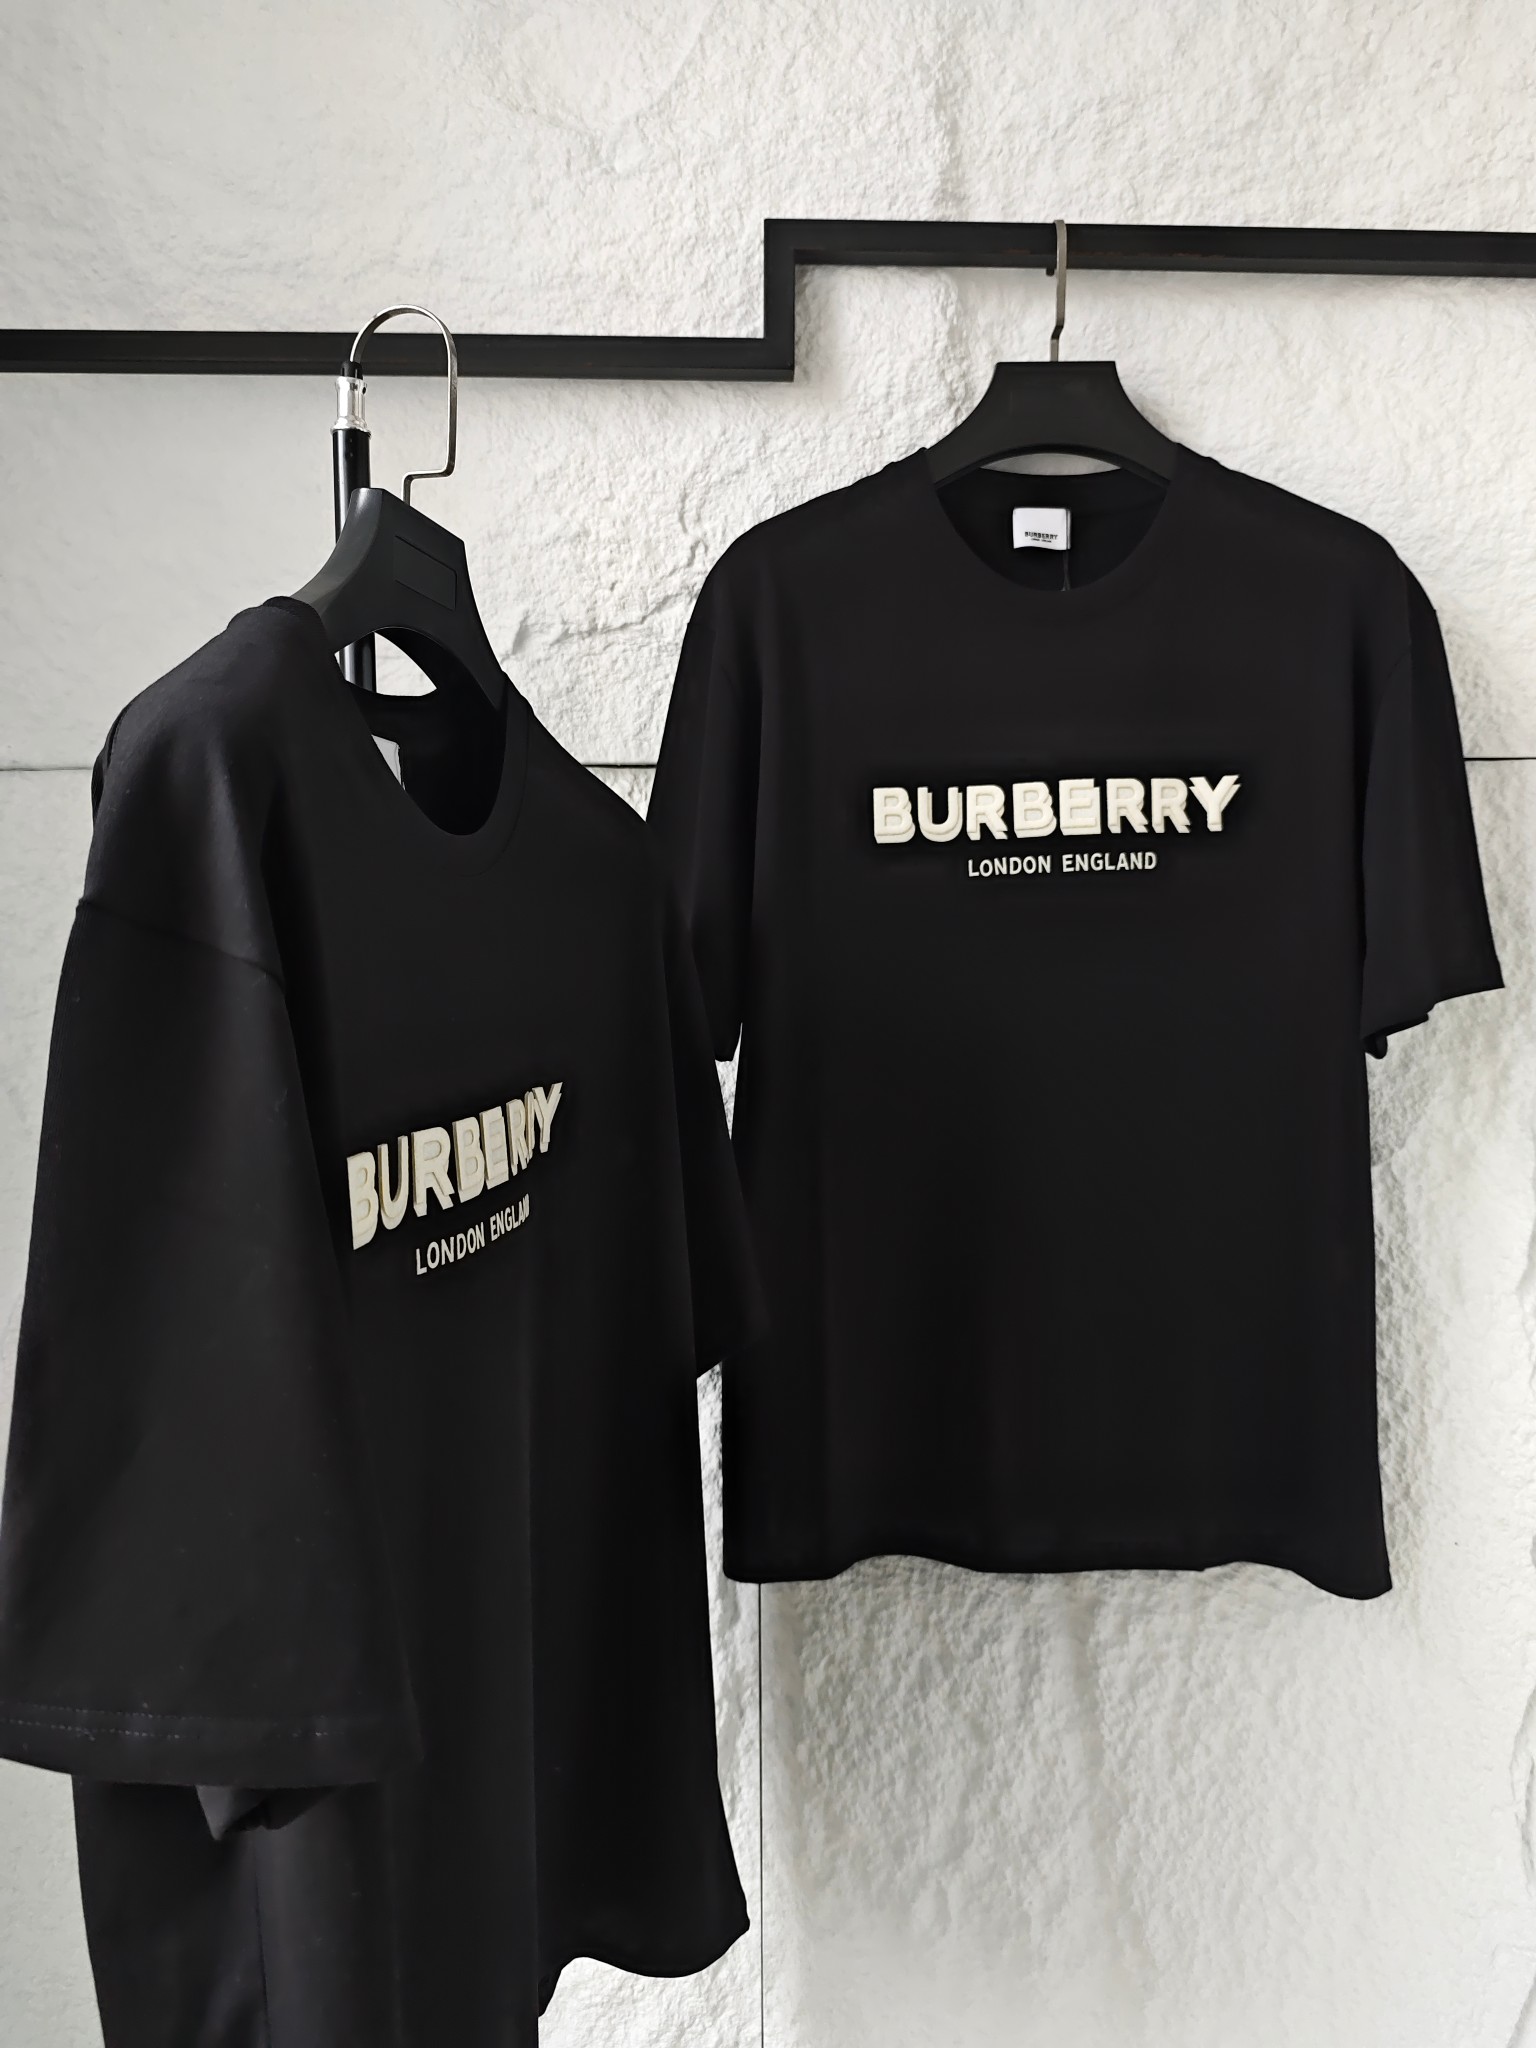 Burberry Kleidung T-Shirt Schwarz Unisex Baumwolle Fashion Kurzarm